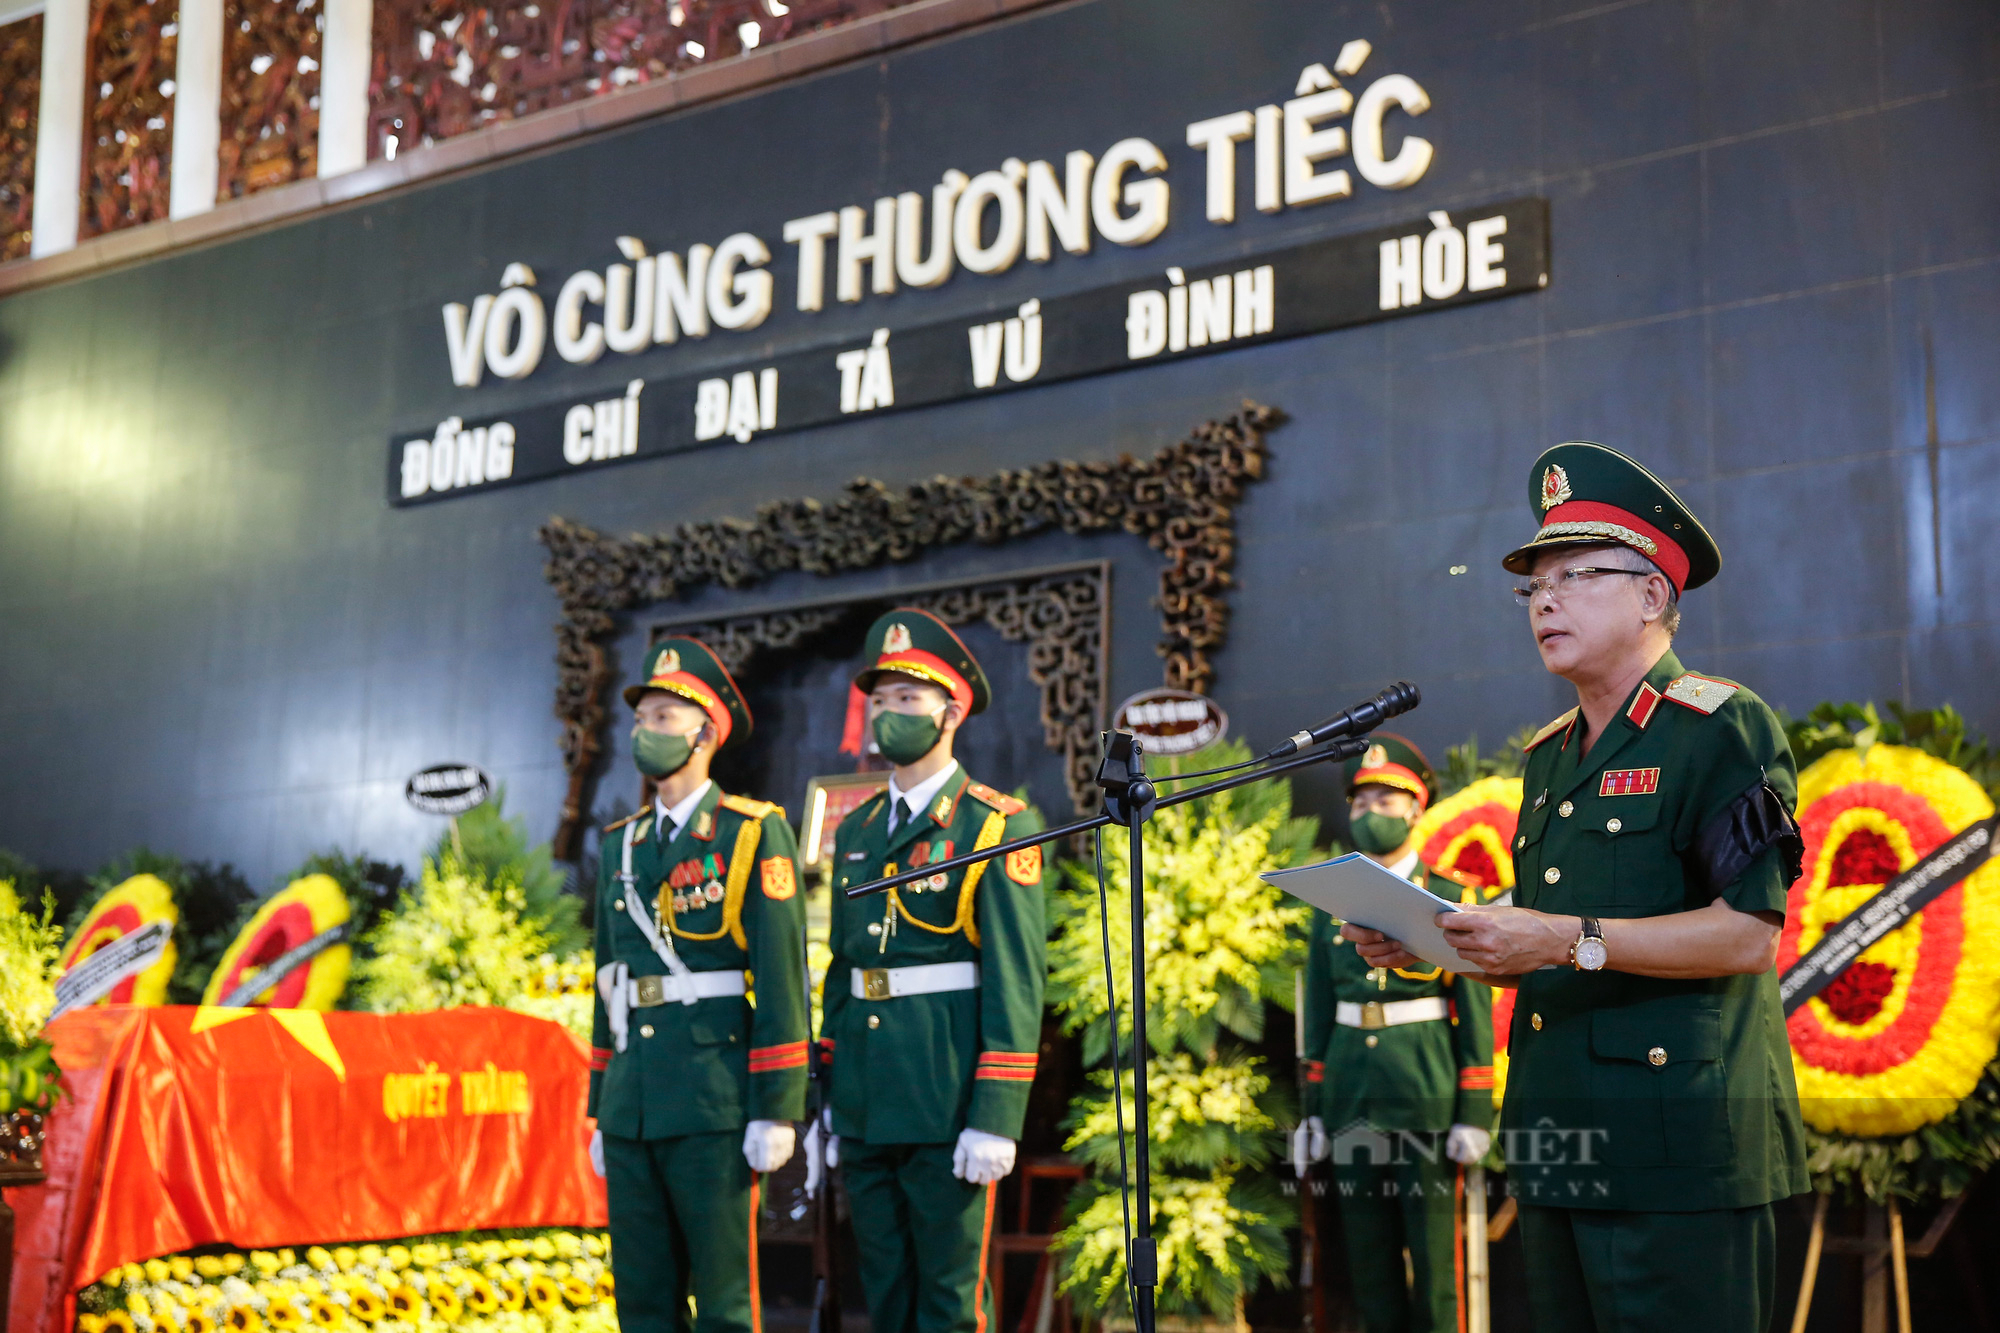 Lễ tang Đại tá Vũ Đình Hòe-Tiểu đoàn trưởng đánh đồi A1 suốt 38 ngày đêm trong chiến dịch Điện Biên Phủ - Ảnh 3.